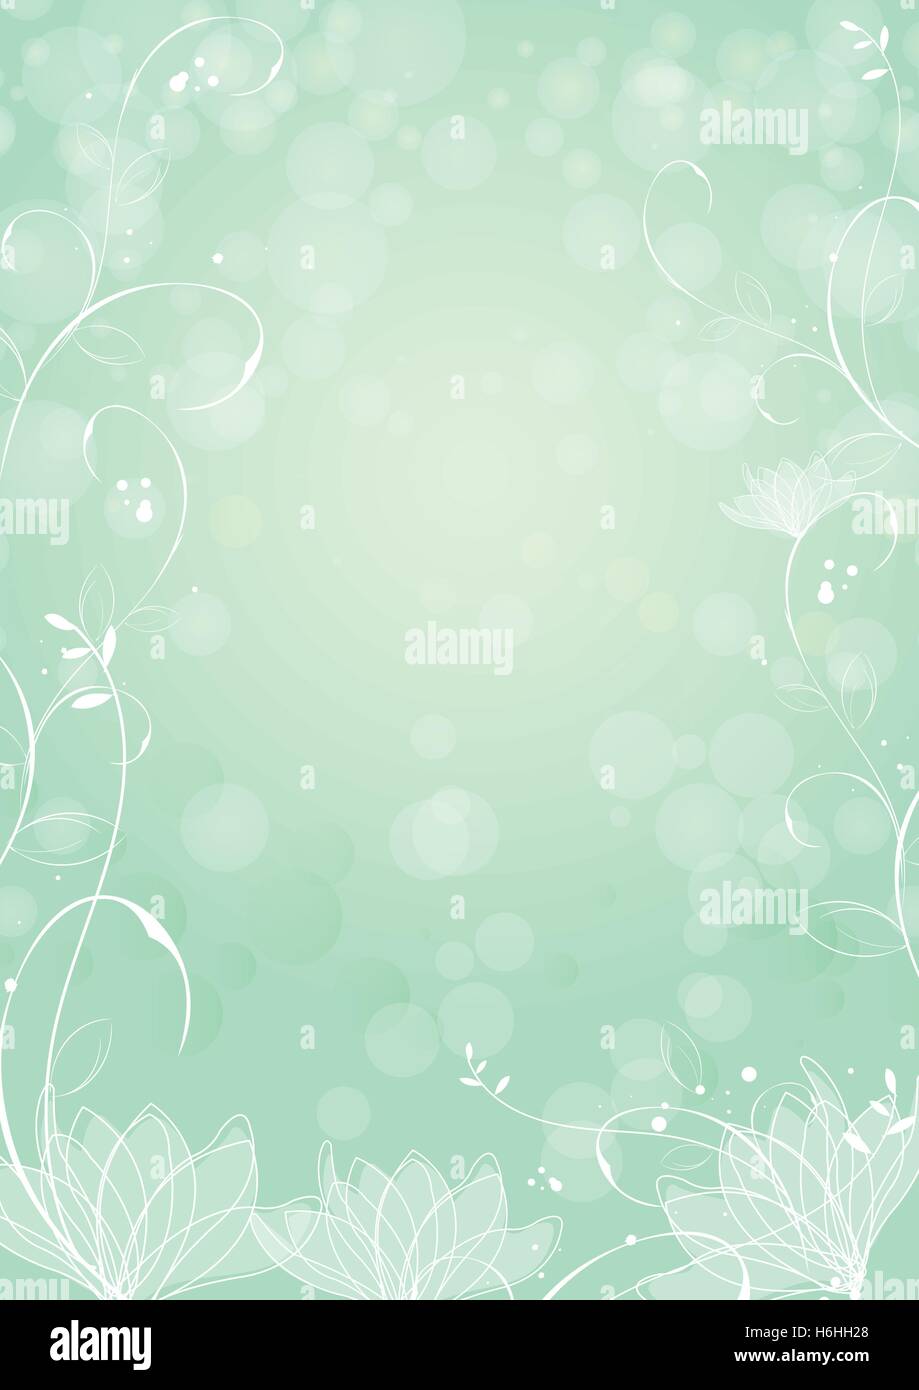 Gradient Grünbuch Hintergrund mit Grenze Lotus und Pflanzen Stock Vektor